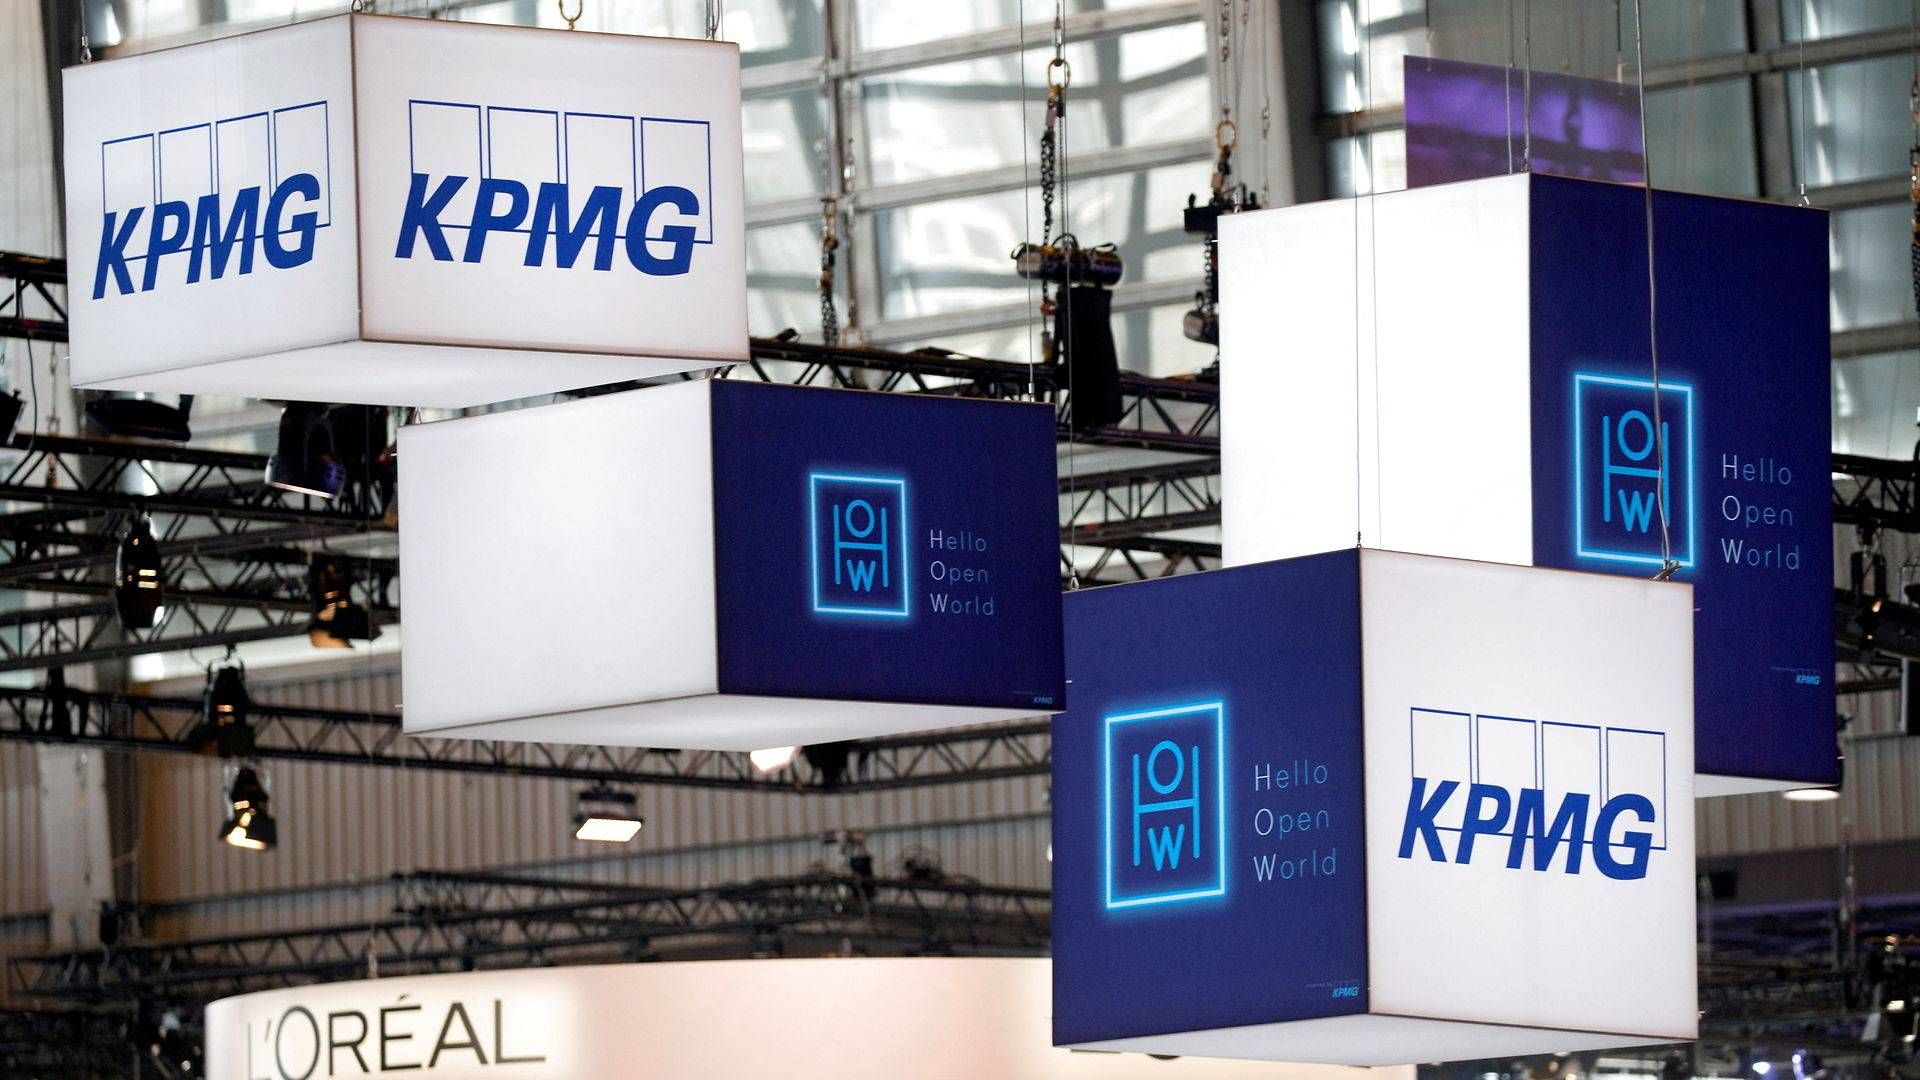 Advokater i KPMG Law Advokatfirma har fået bøder for deres tætte bånd til KPMG. Sagen skal nu afgøres ved domstolene. | Foto: Charles Platiau/Reuters/Ritzau Scanpix